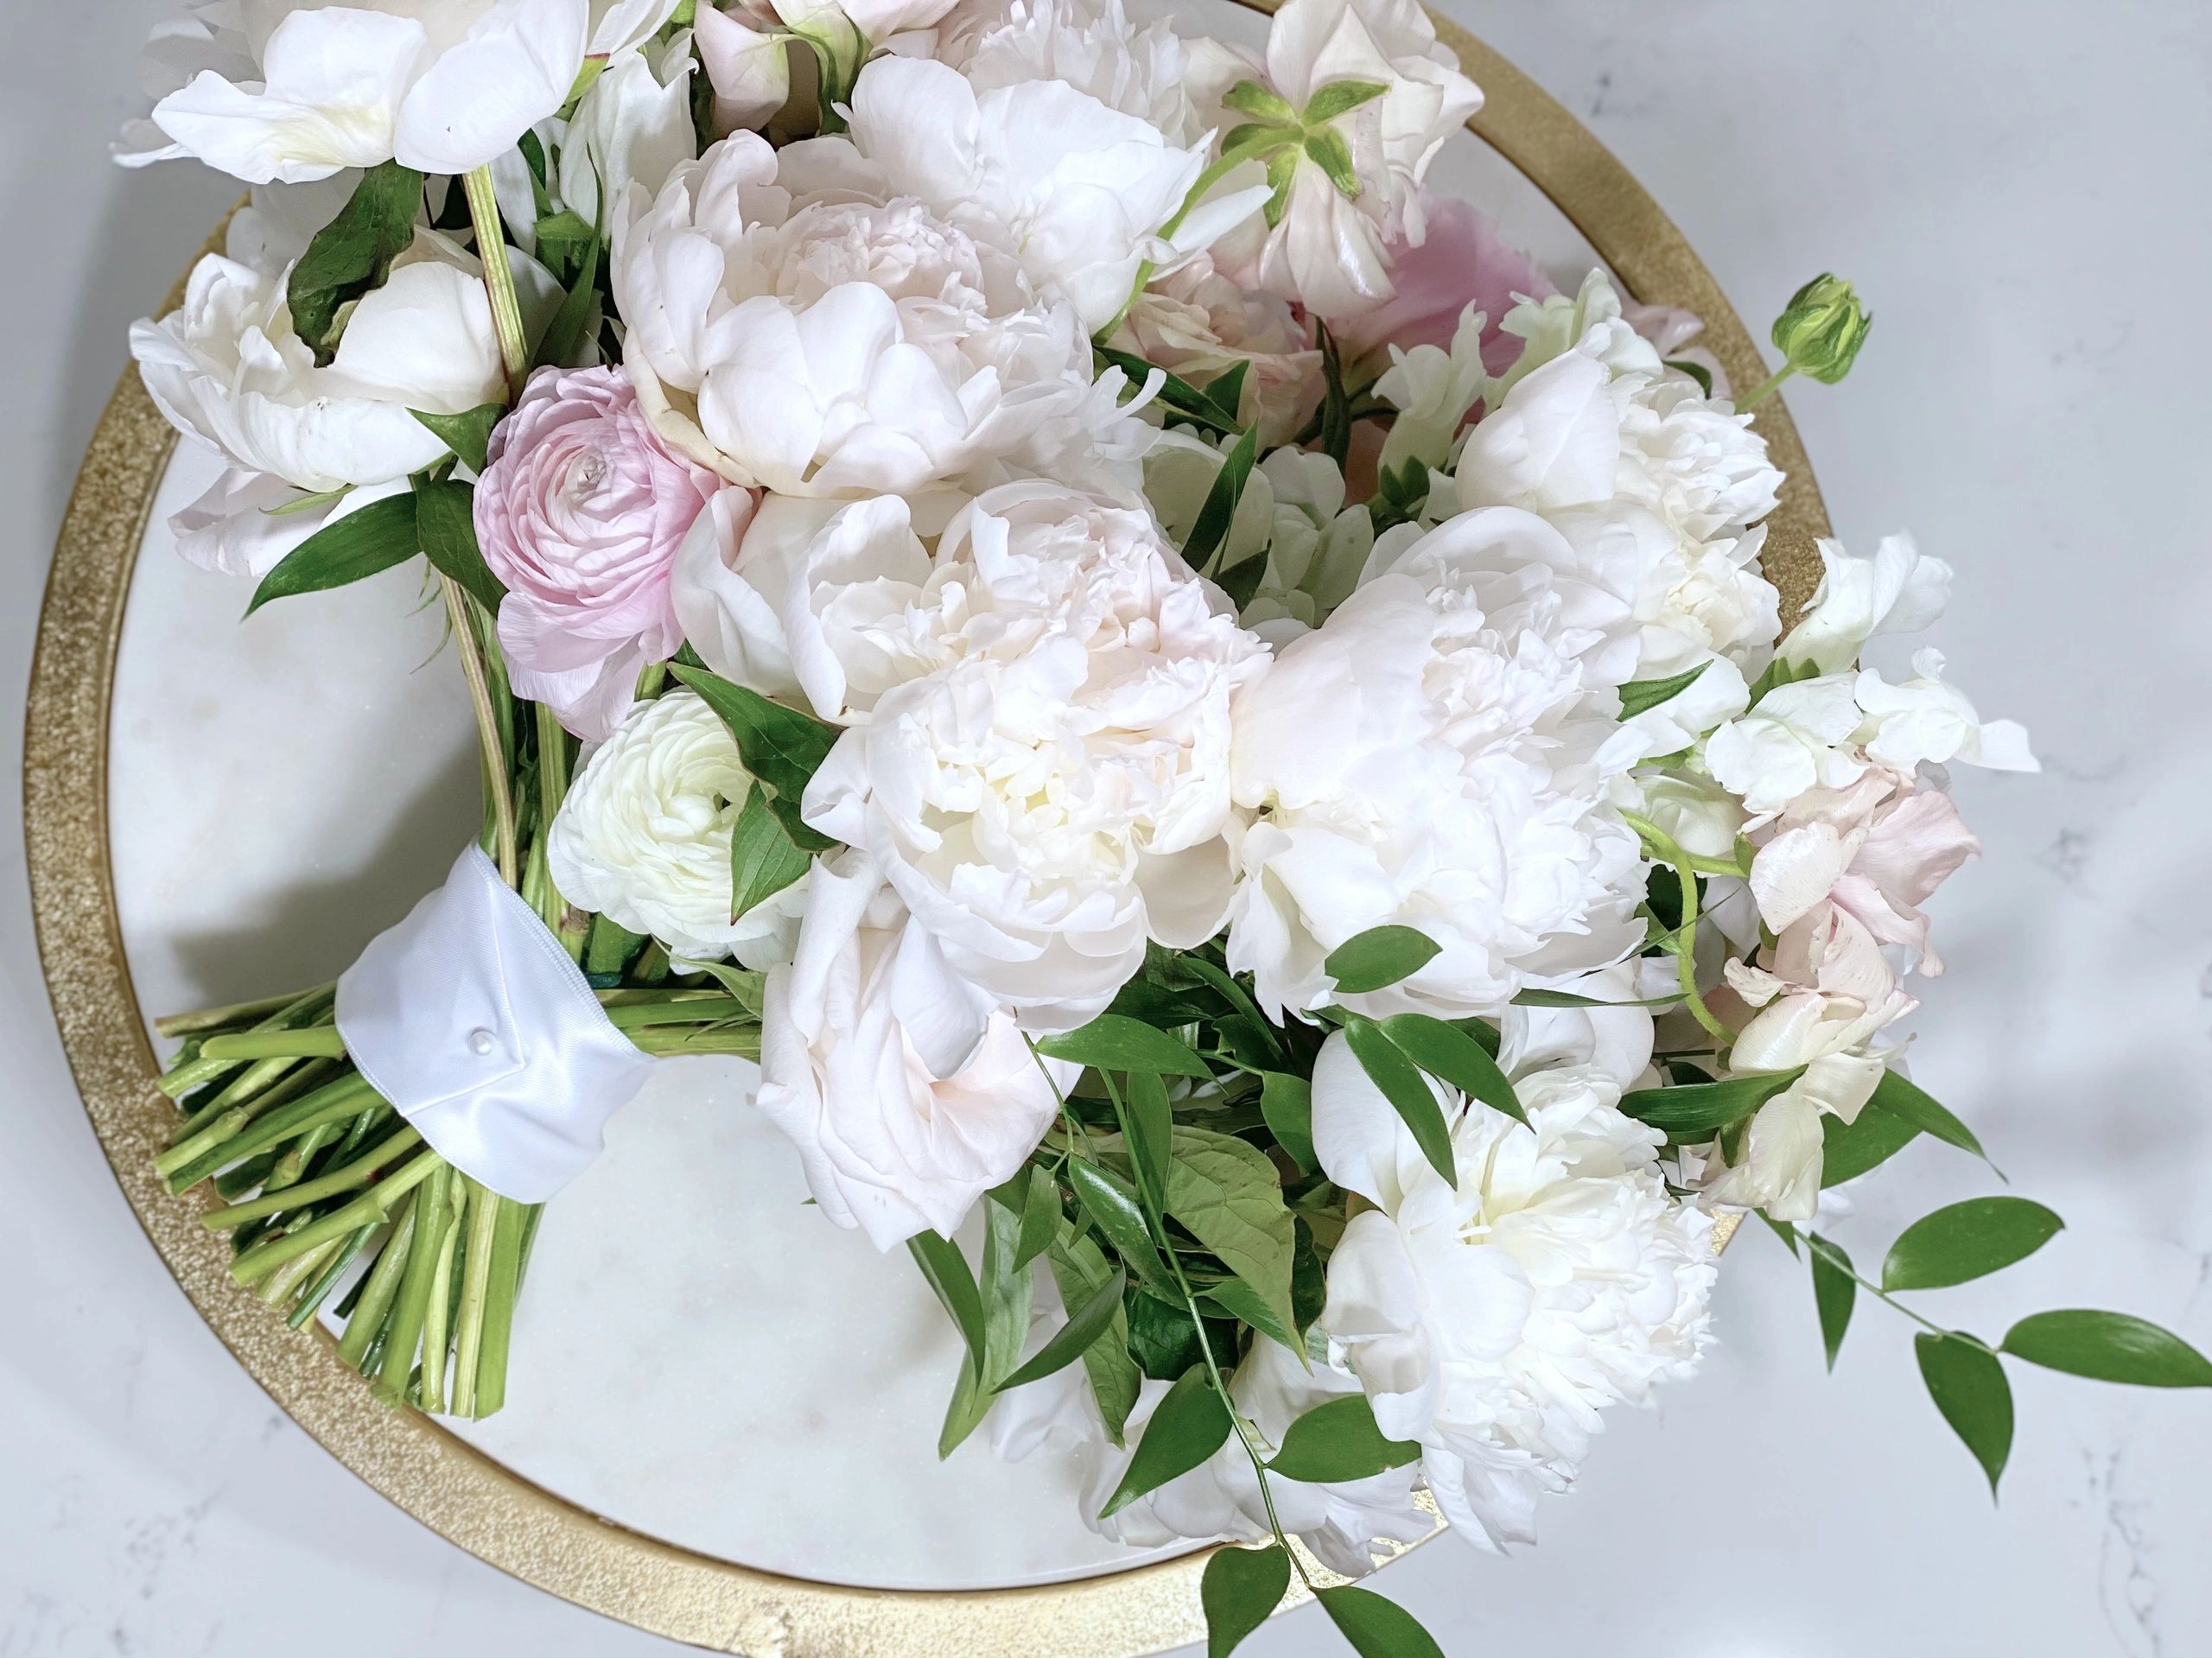 Luxury wedding flower arrangements 